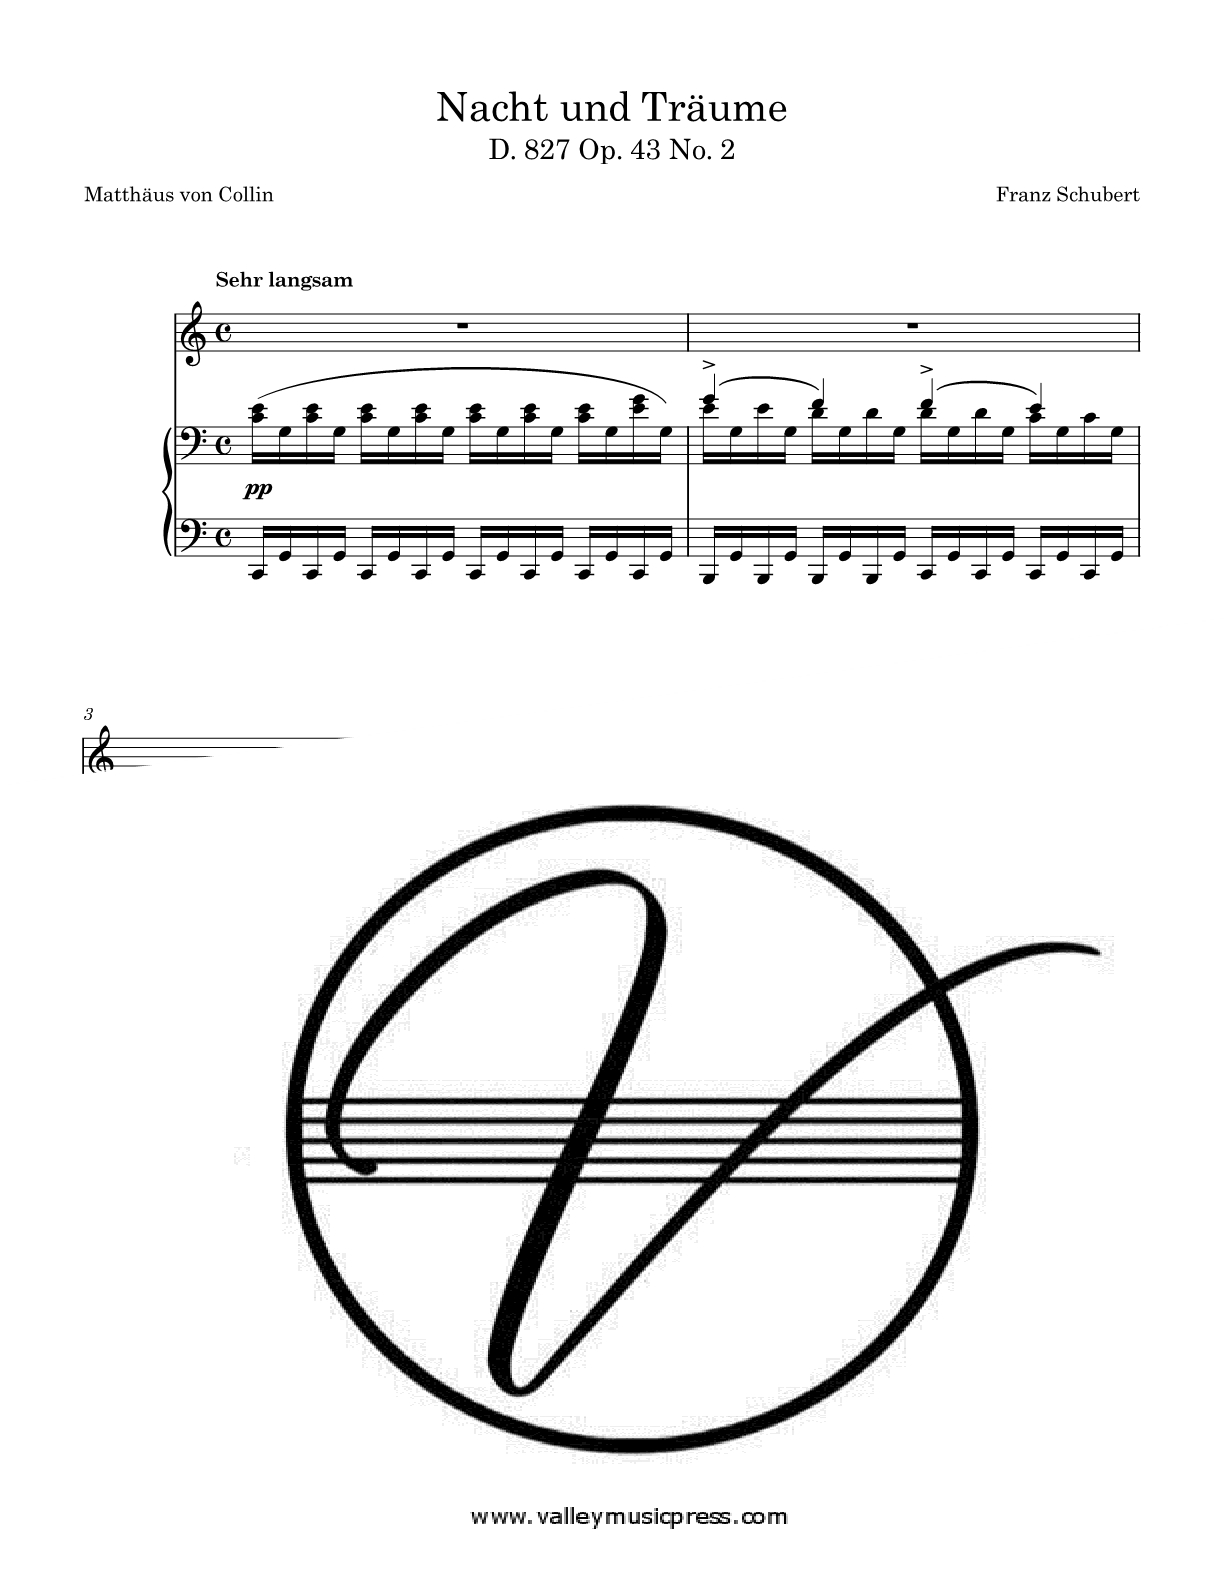 Schubert - Nacht und Traume D. 827 Op. 43 No. 2 (Voice) - Click Image to Close